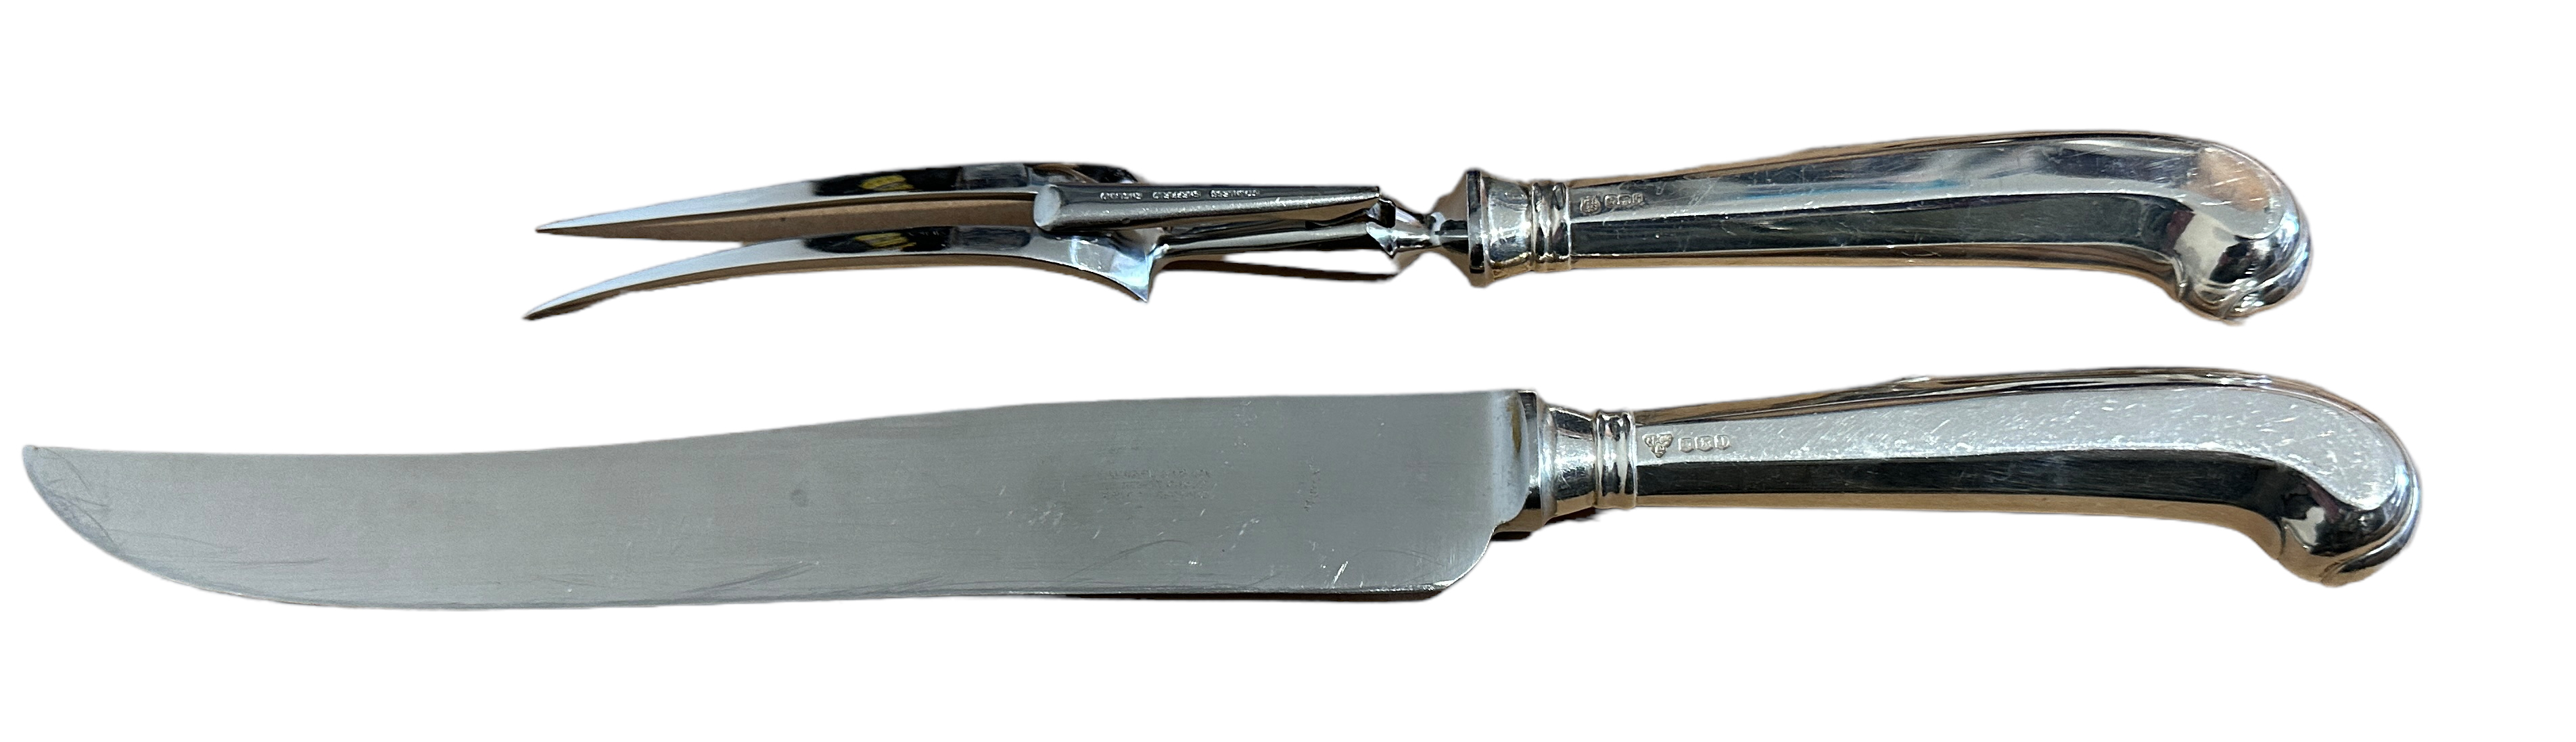 Vintage Silver Handled Pistol Grip Carving Set - Knife 14" long and Fork 10 3/4" long.